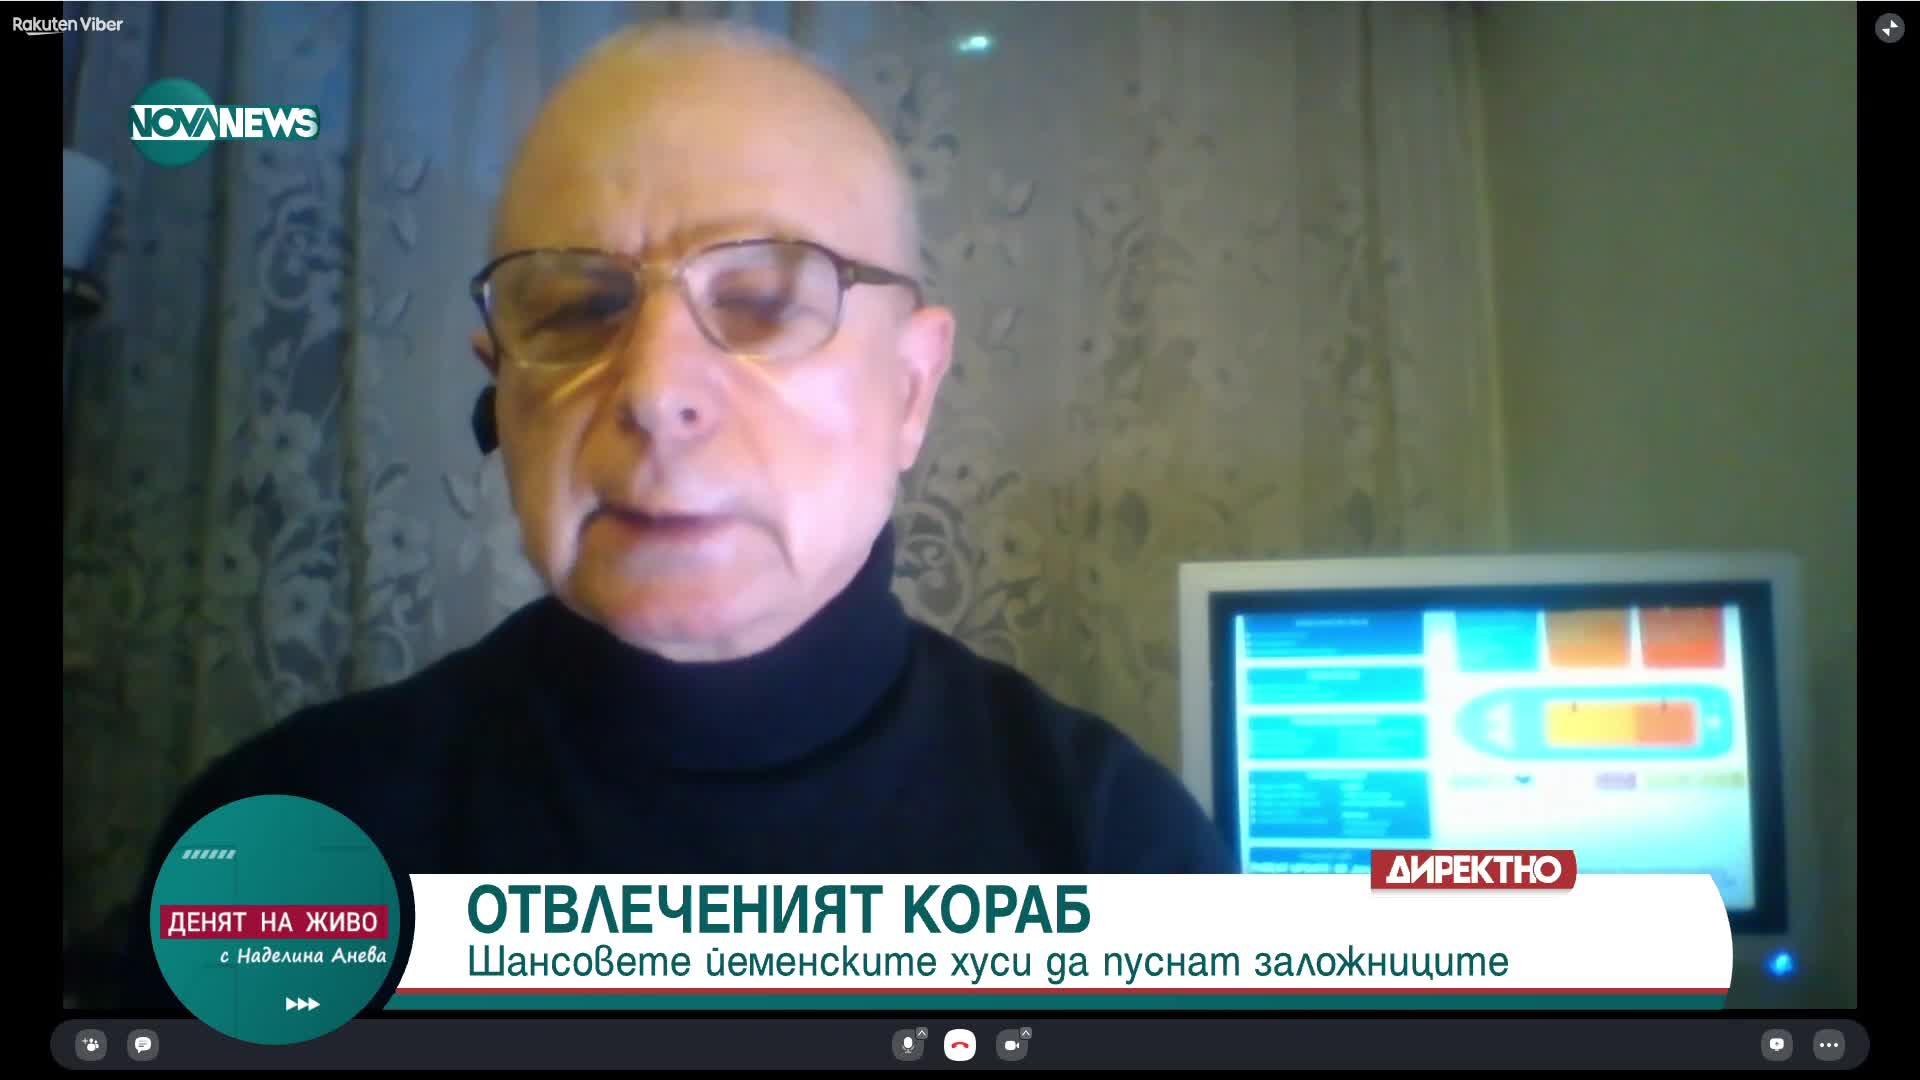 Кап. Христо Папукчиев: Очаква се освобождаване на всички моряци от кораба „Galaxy Leader"